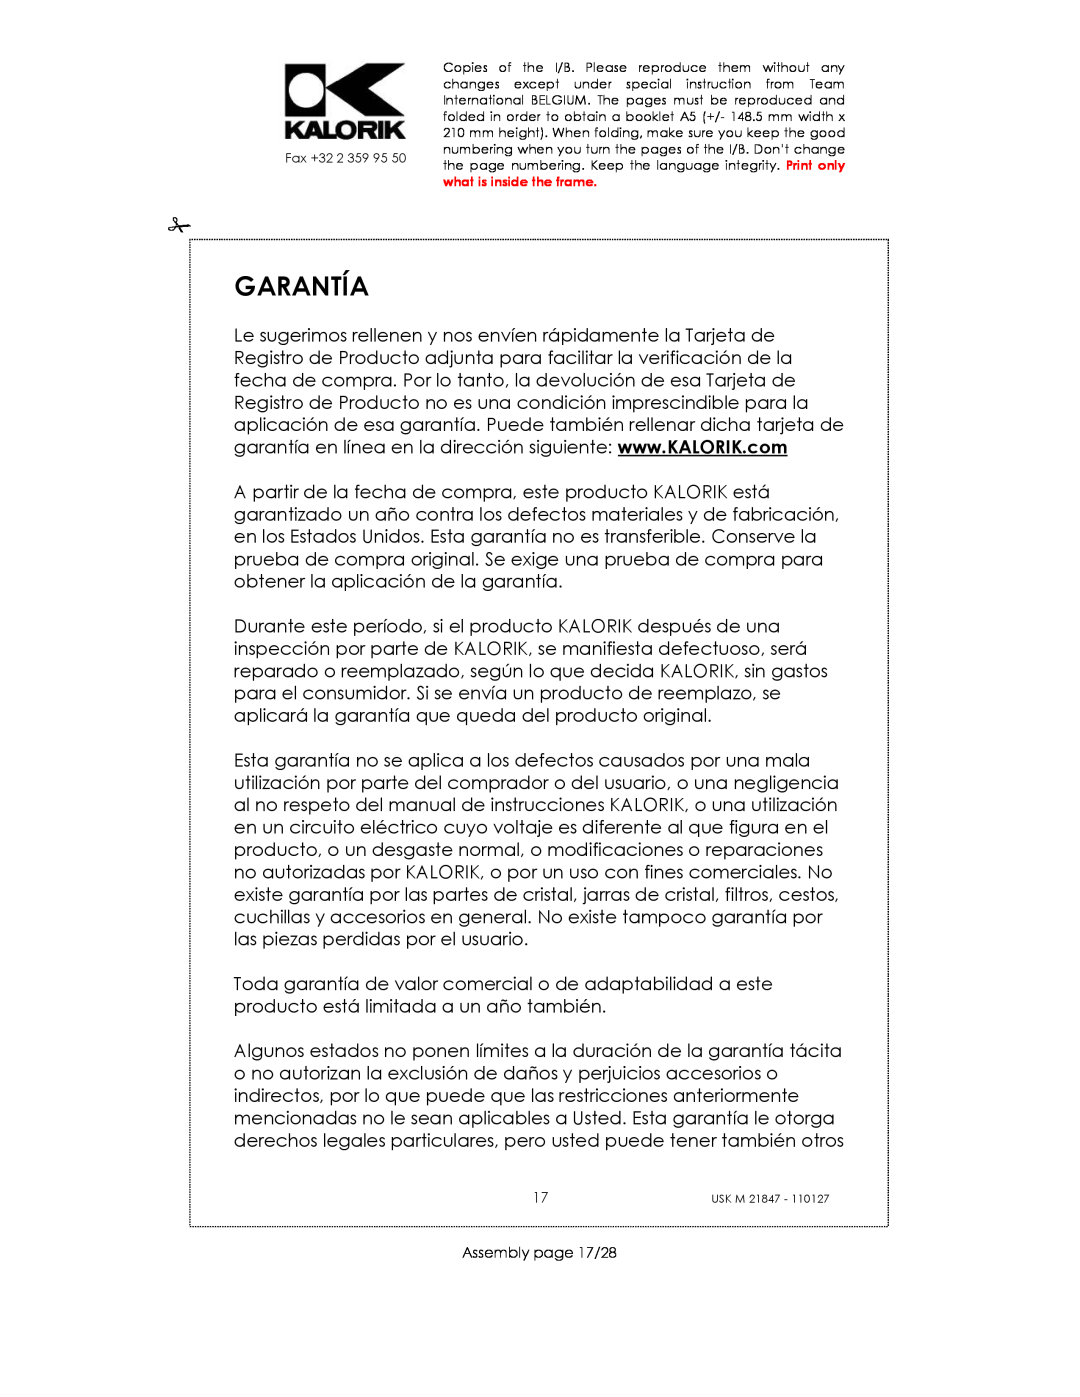 Kalorik USK M 21847 manual Garantía, Assembly page 17/28 